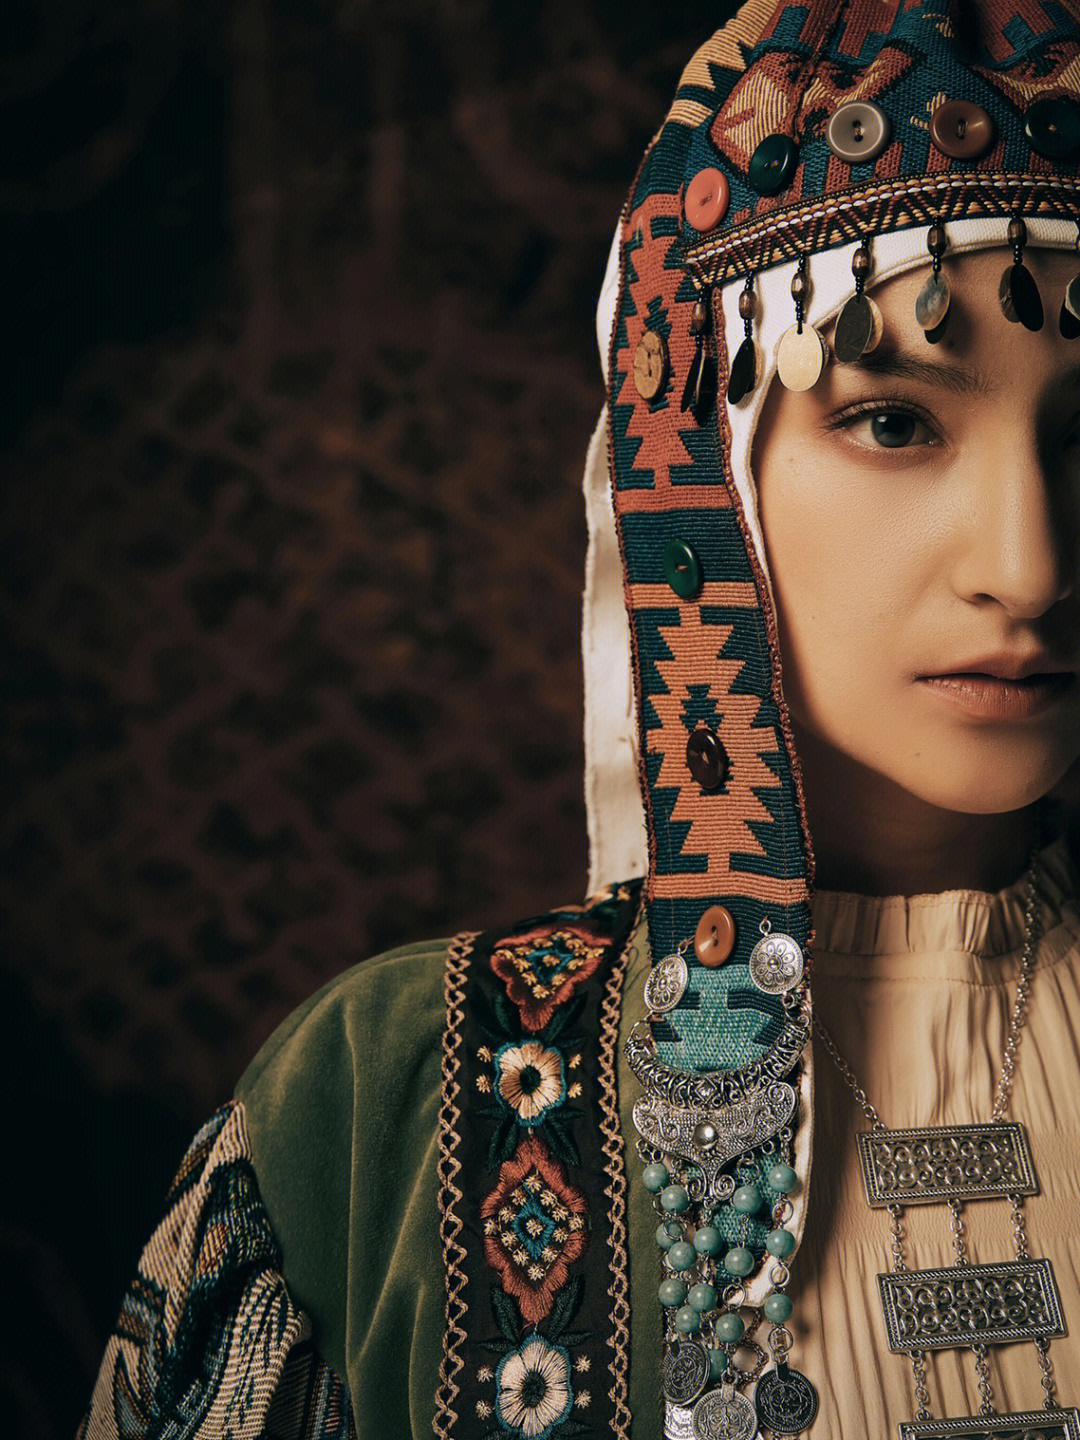 作为我国56个民族之一的少数民族,有着2000多年的历史,柯尔克孜族对